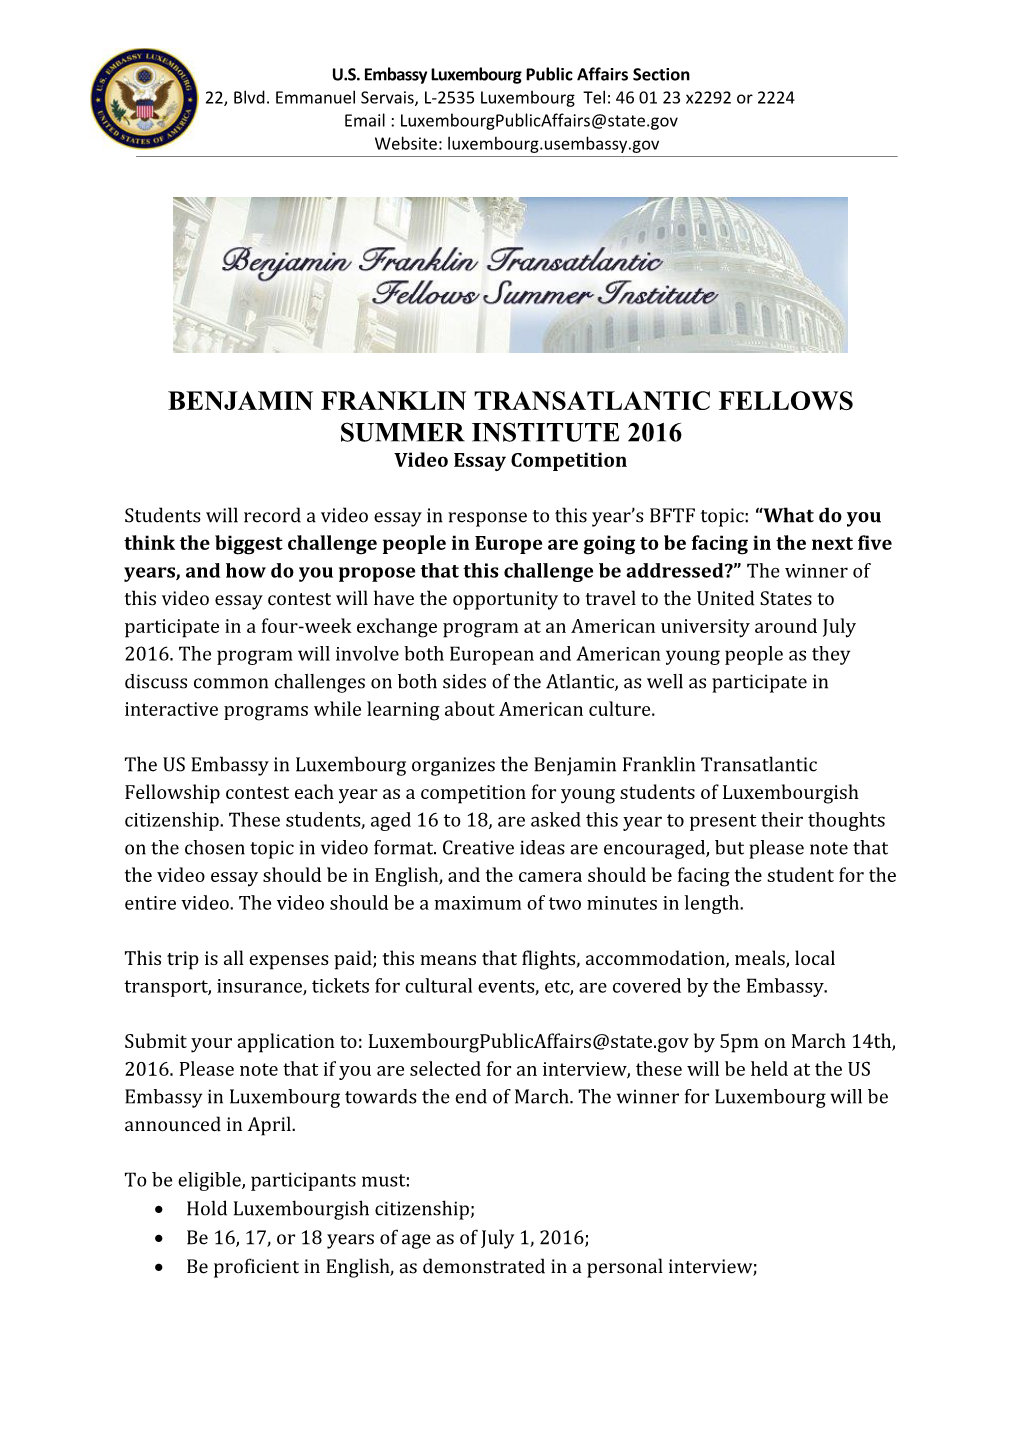 Benjamin Franklin Transatlantic Fellows Summer Institute 2016